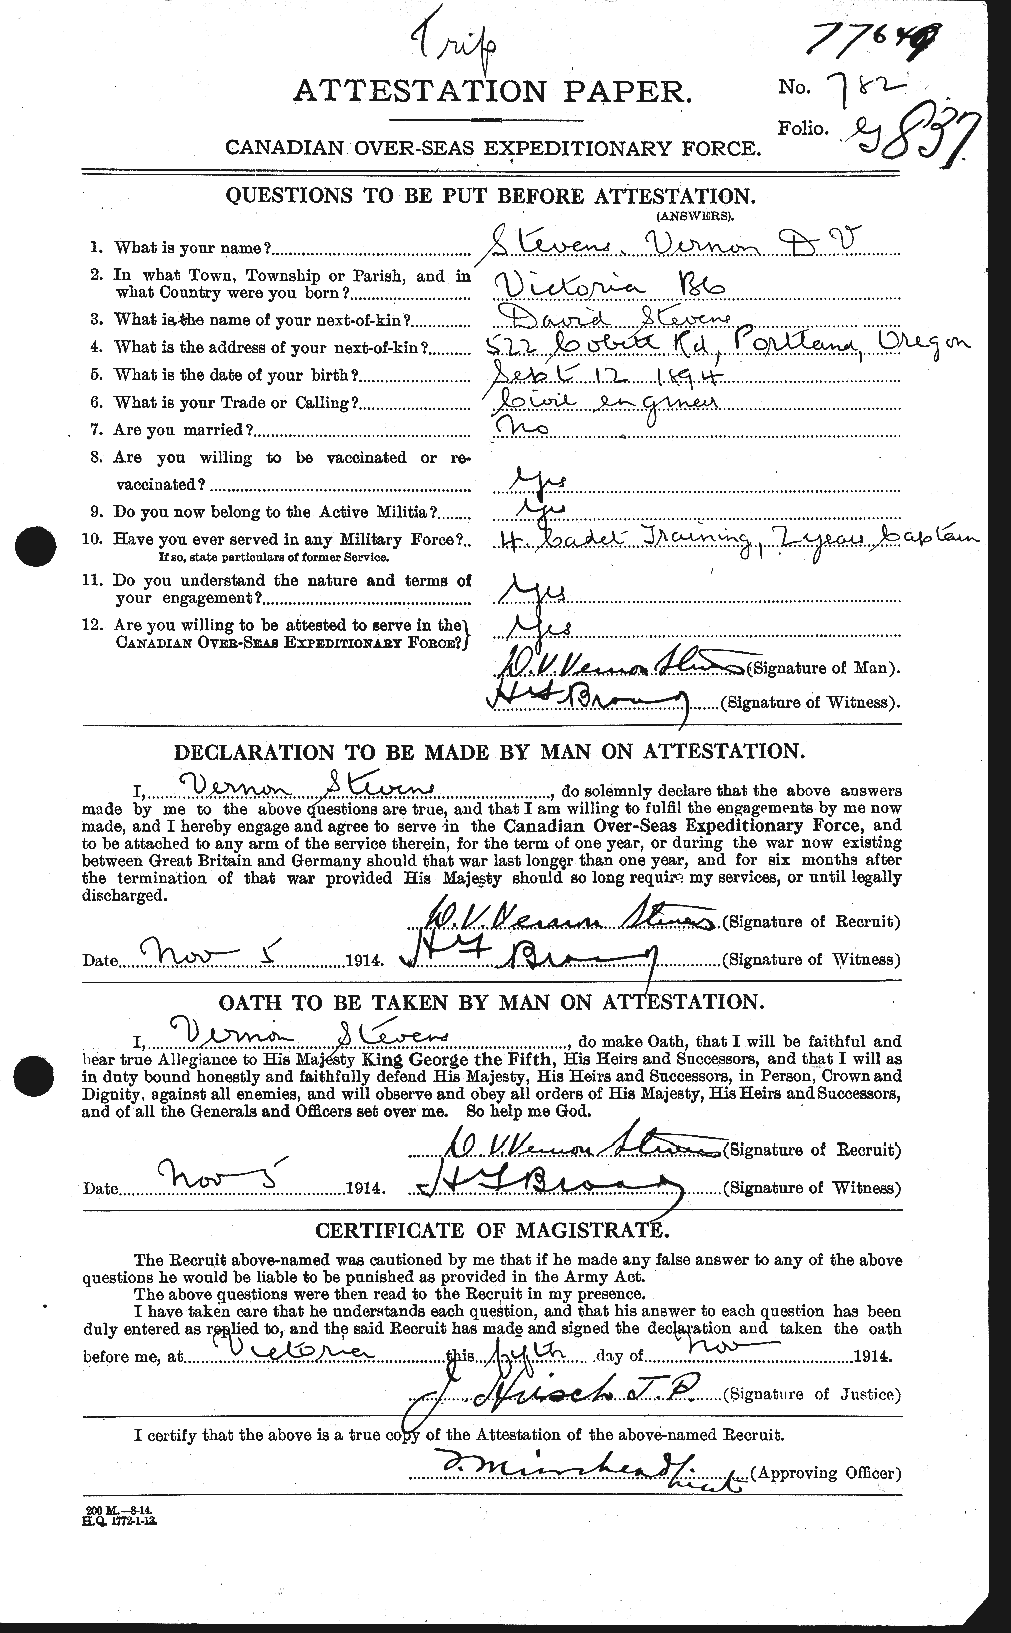 Dossiers du Personnel de la Première Guerre mondiale - CEC 118255a